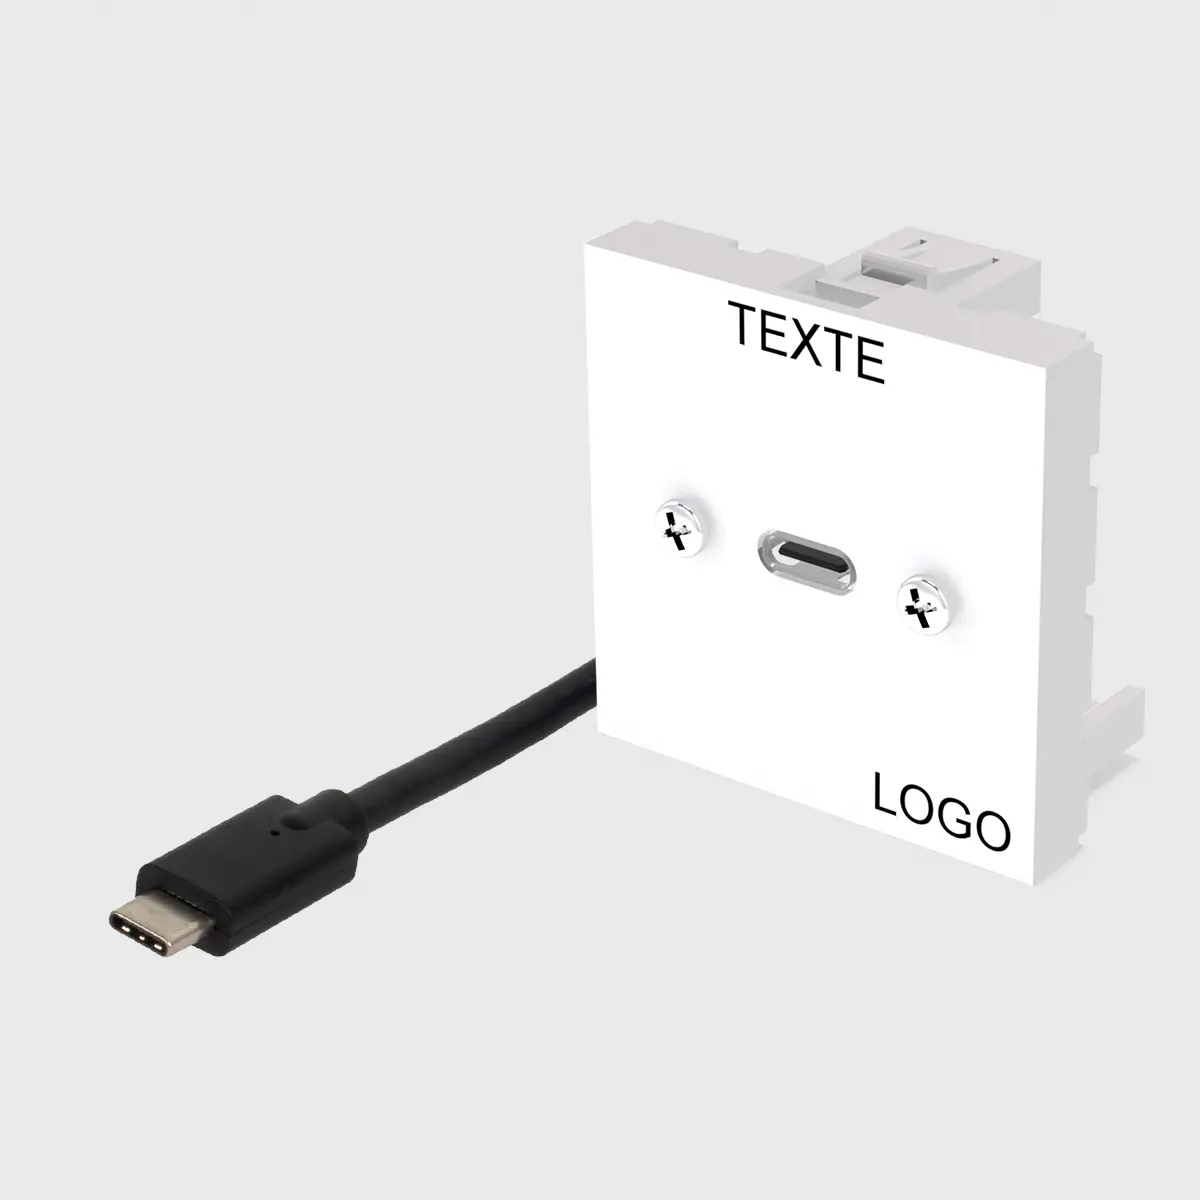 Plastron 45 équipé 1 USB C surmoulé 1m vers fiche USB C M, textes et logo gravés